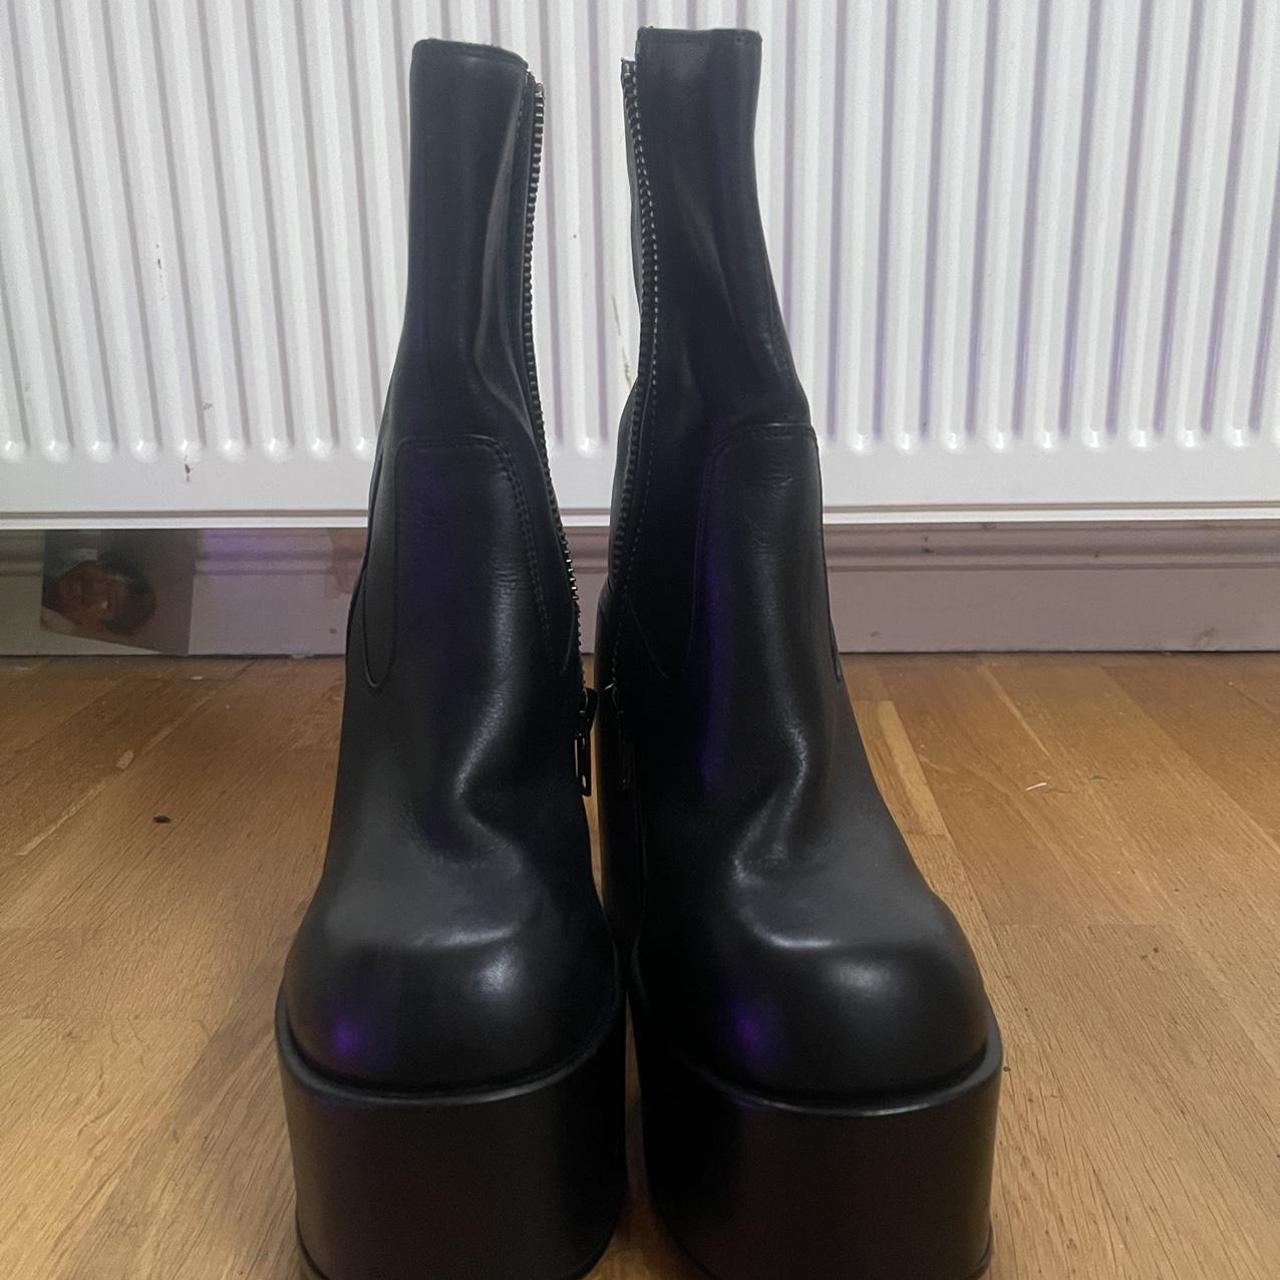 Naked Wolfe Women's Black Boots | Depop